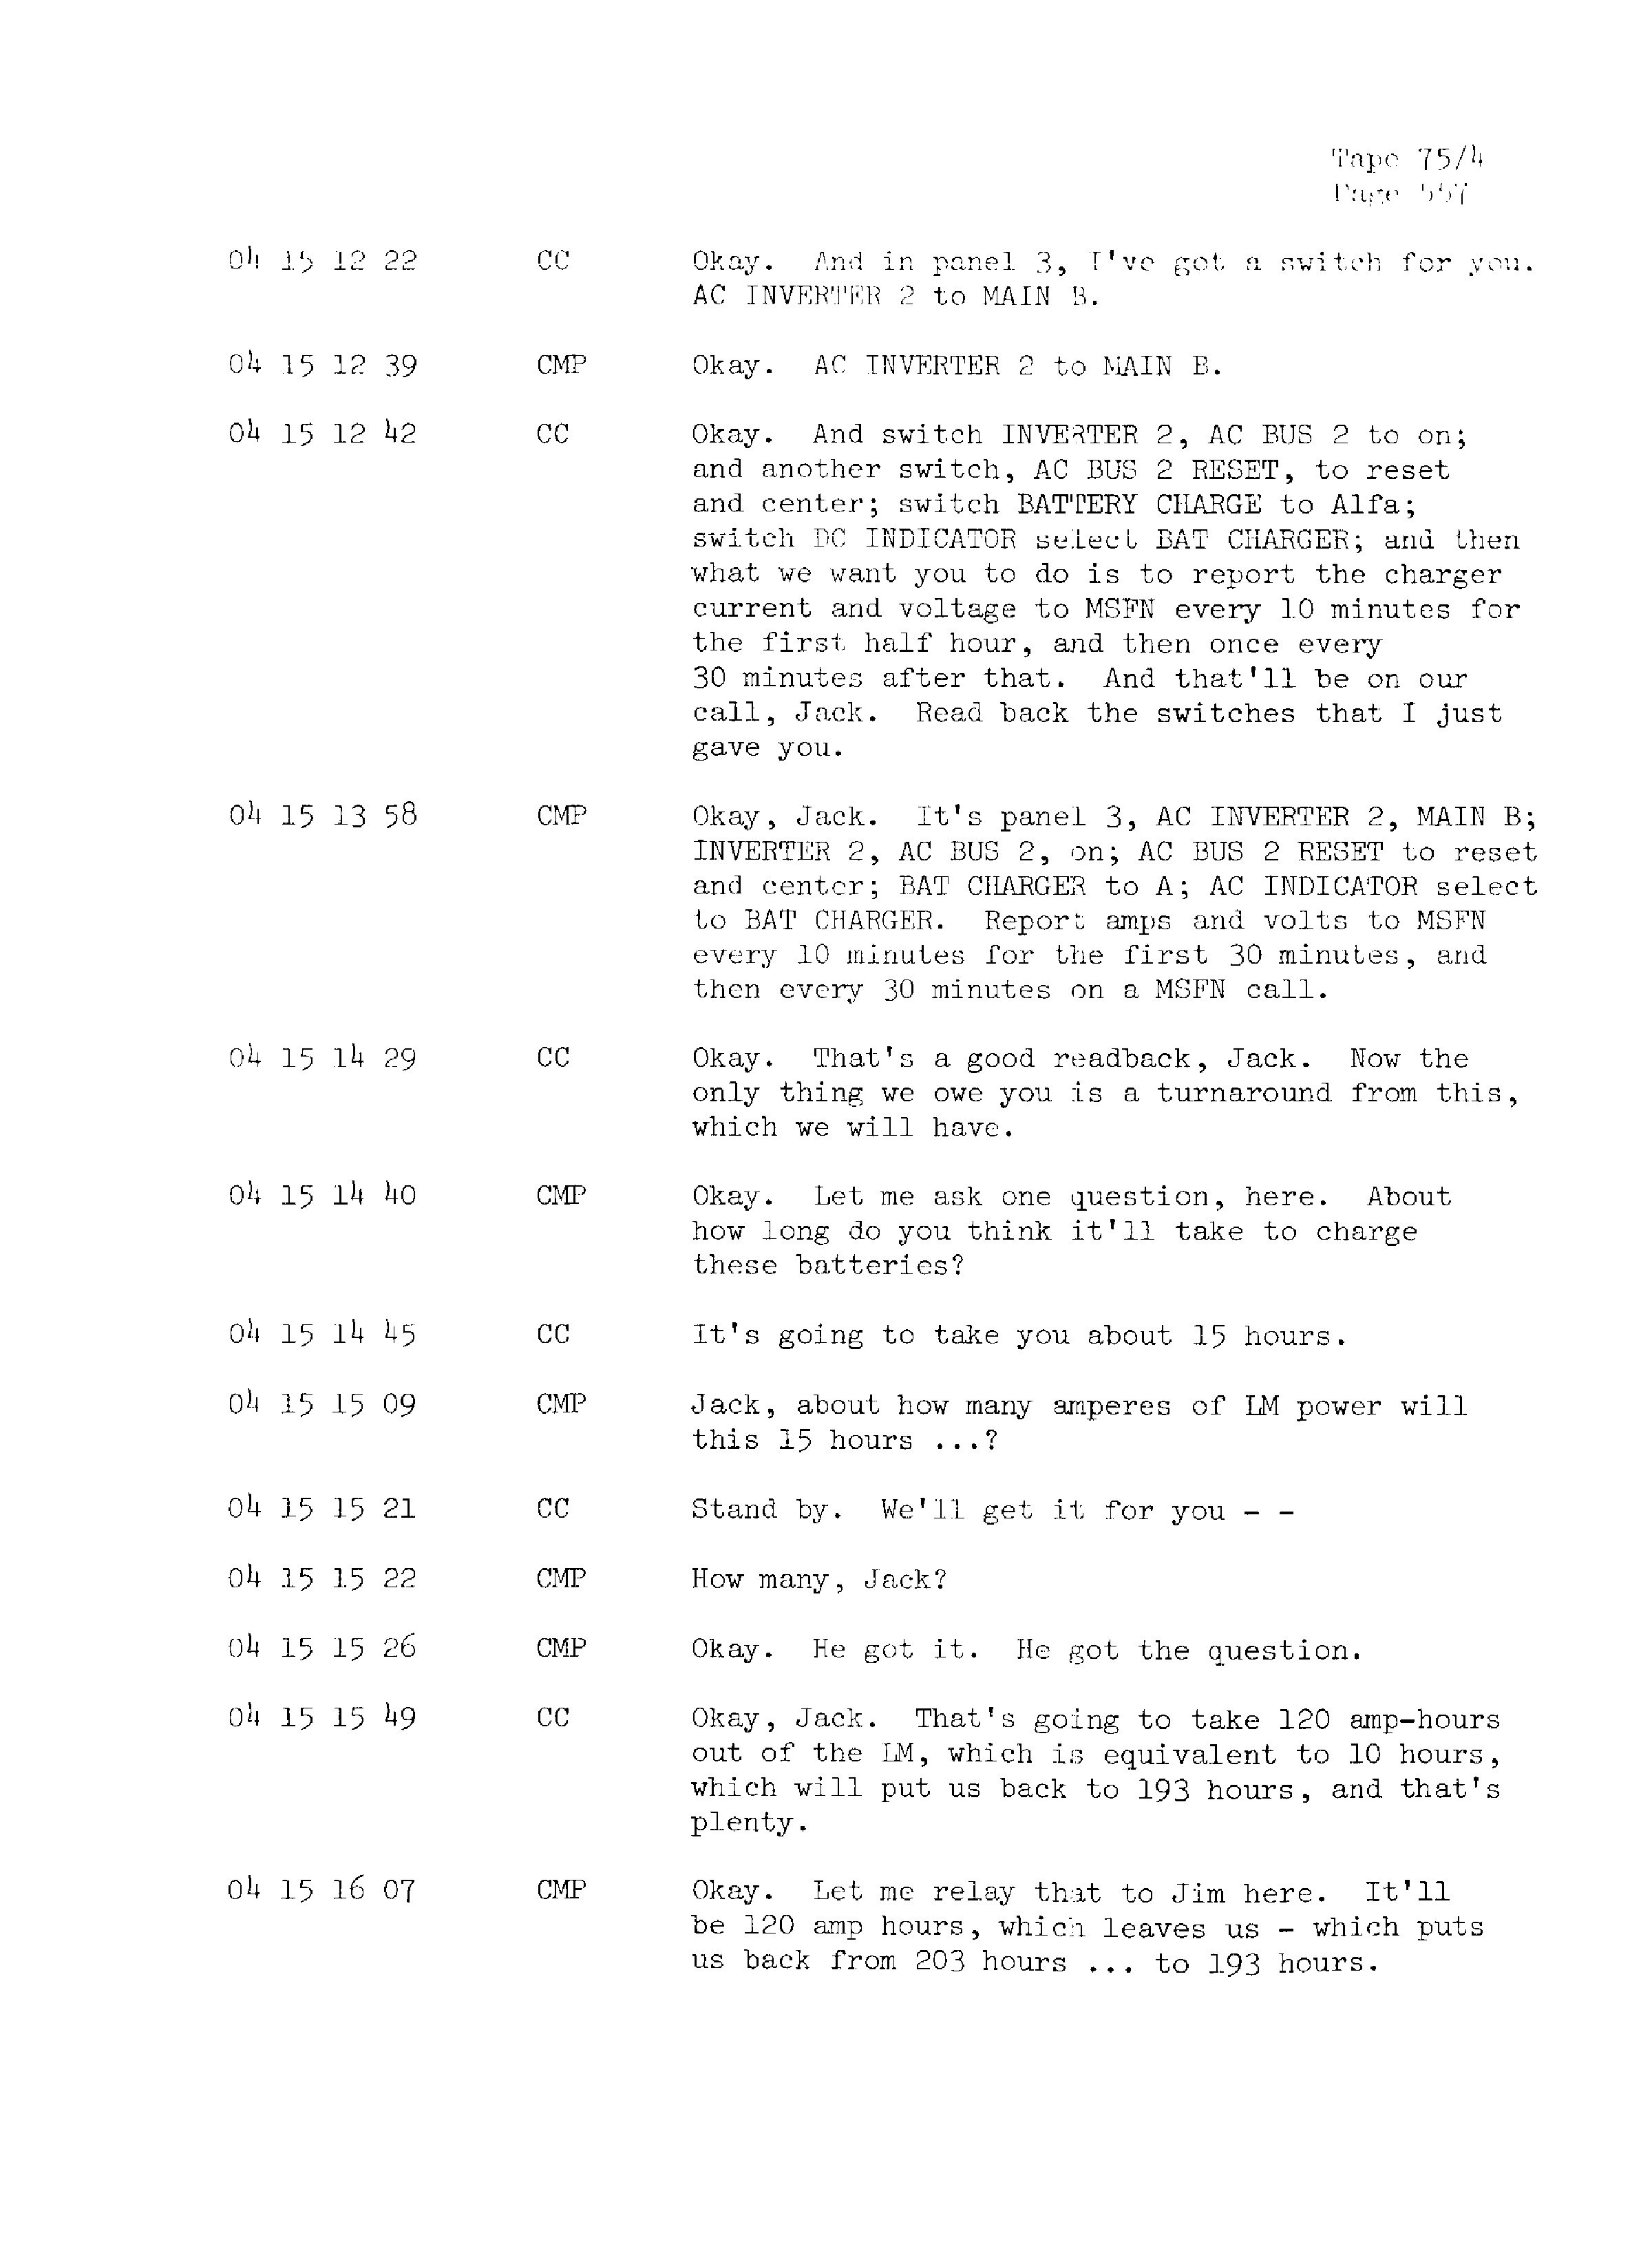 Page 564 of Apollo 13’s original transcript